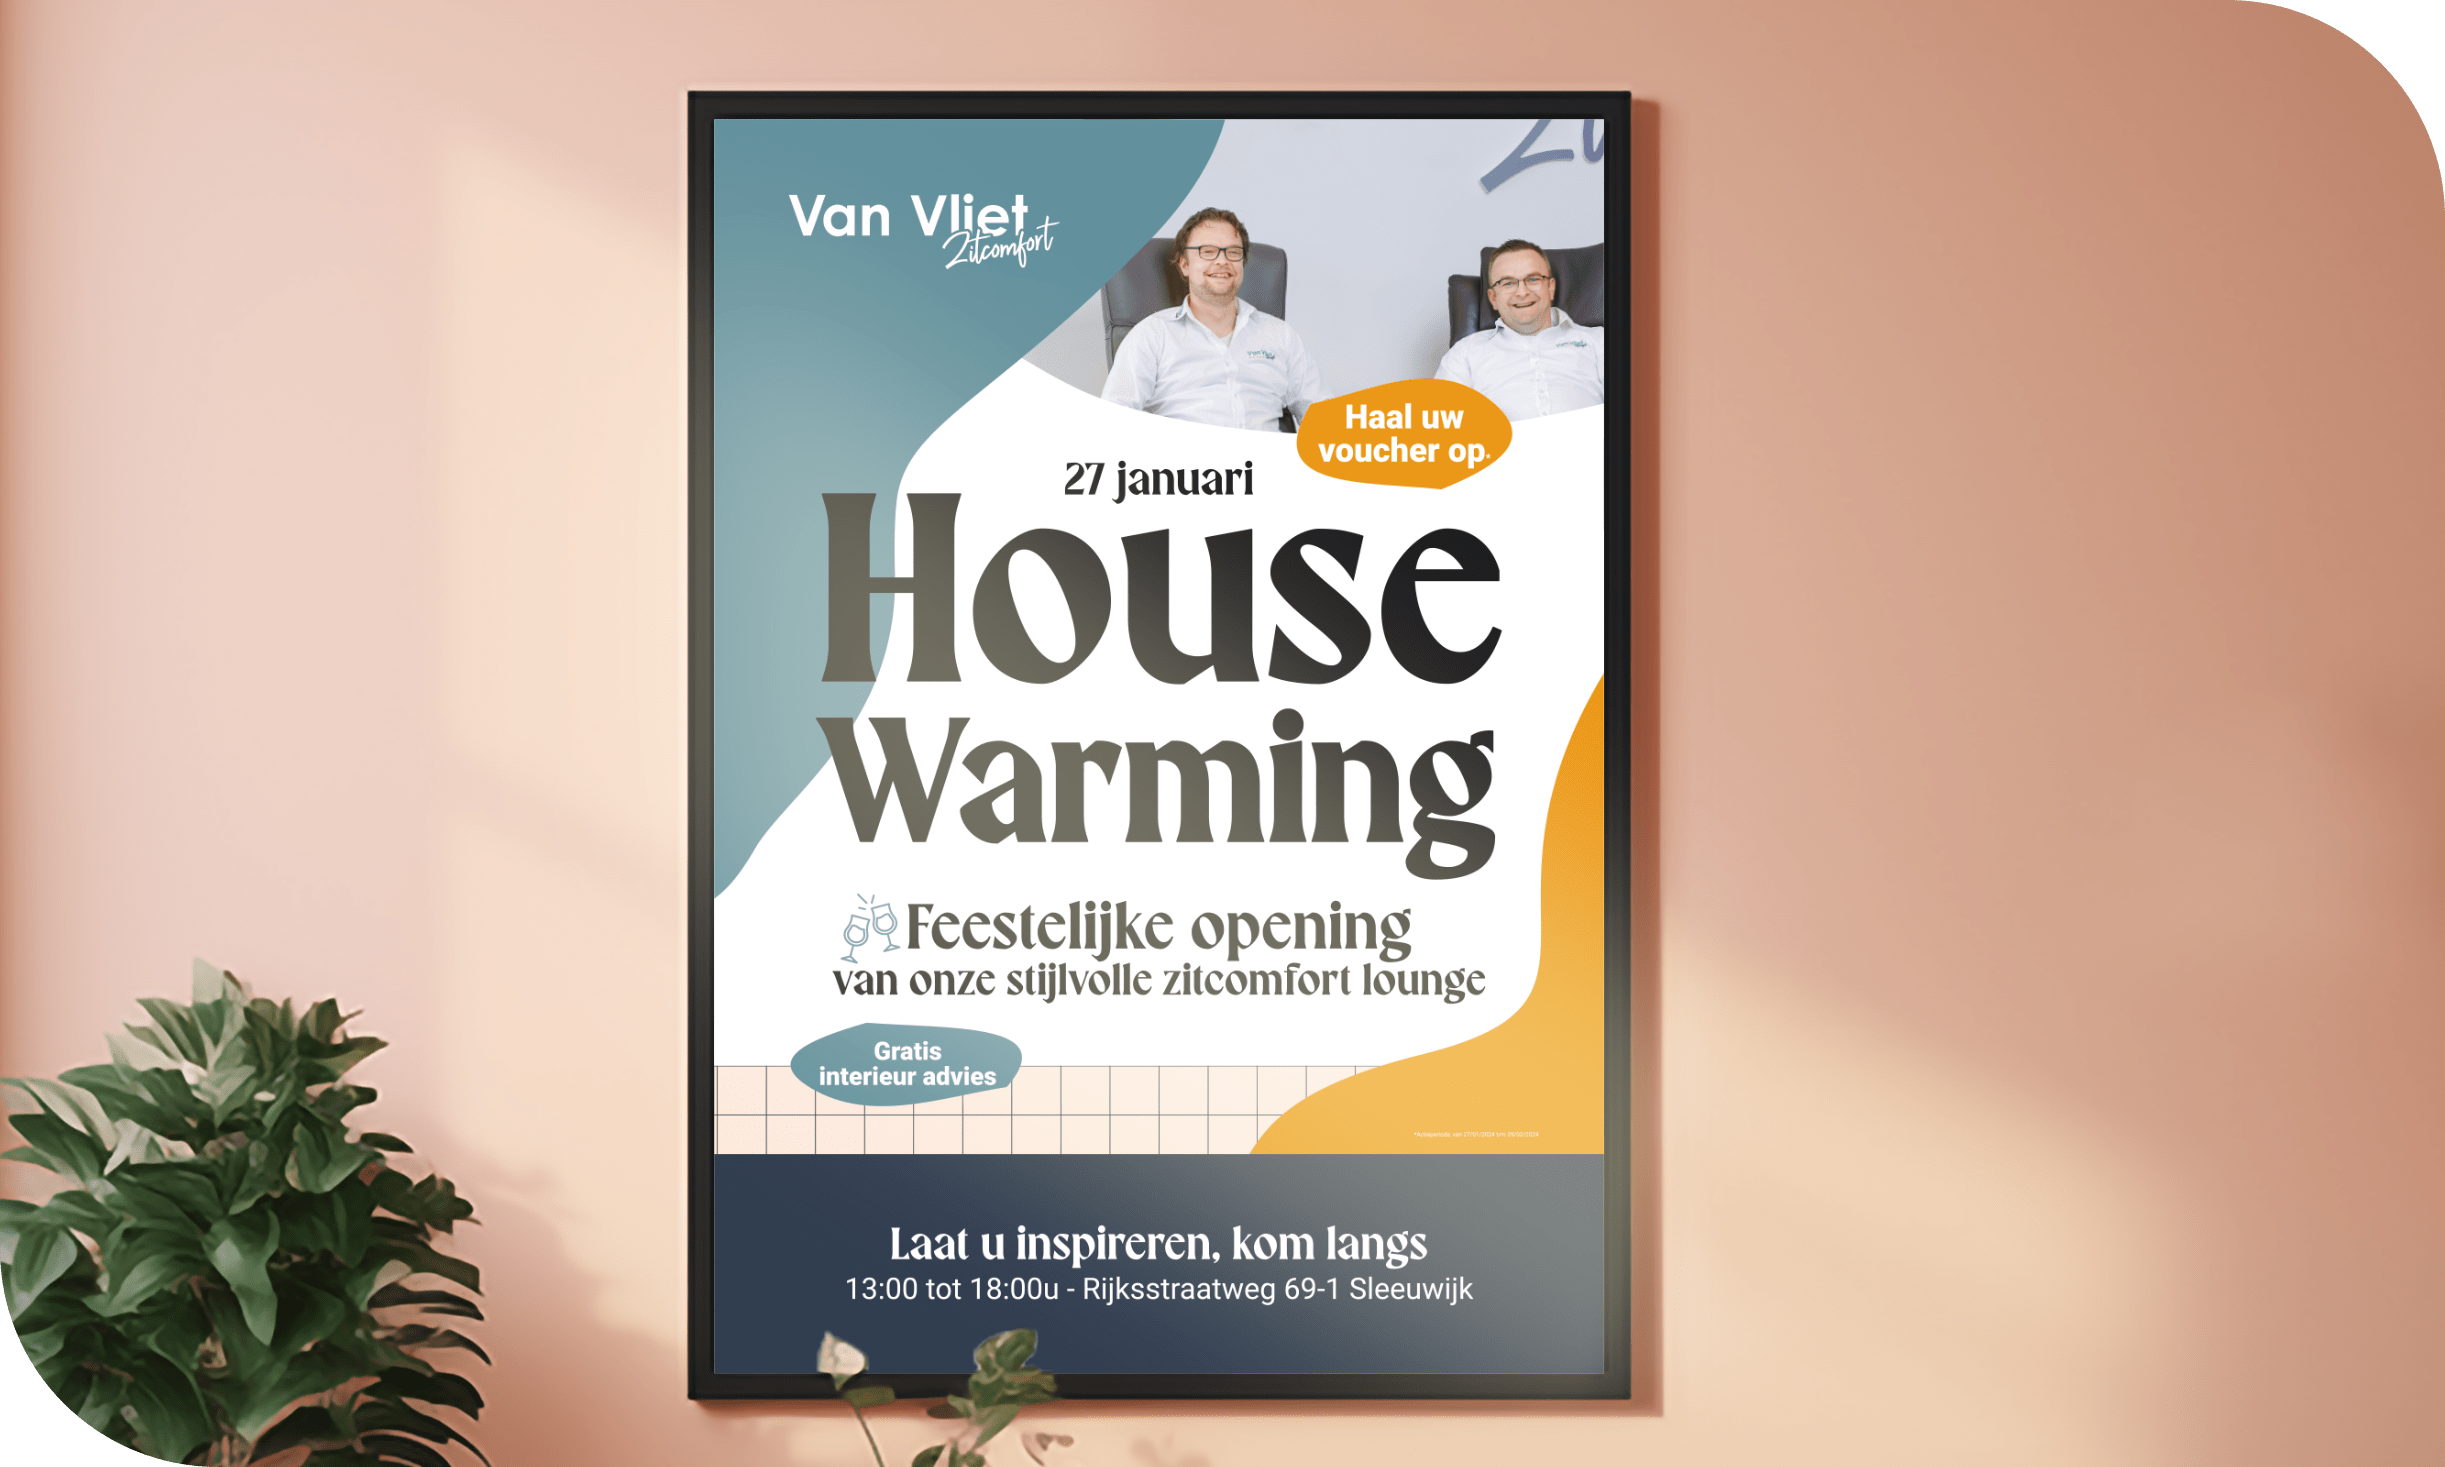 Van Vliet Zitcomfort Housewarming Poster door Joofle Reclame uit Gorinchem